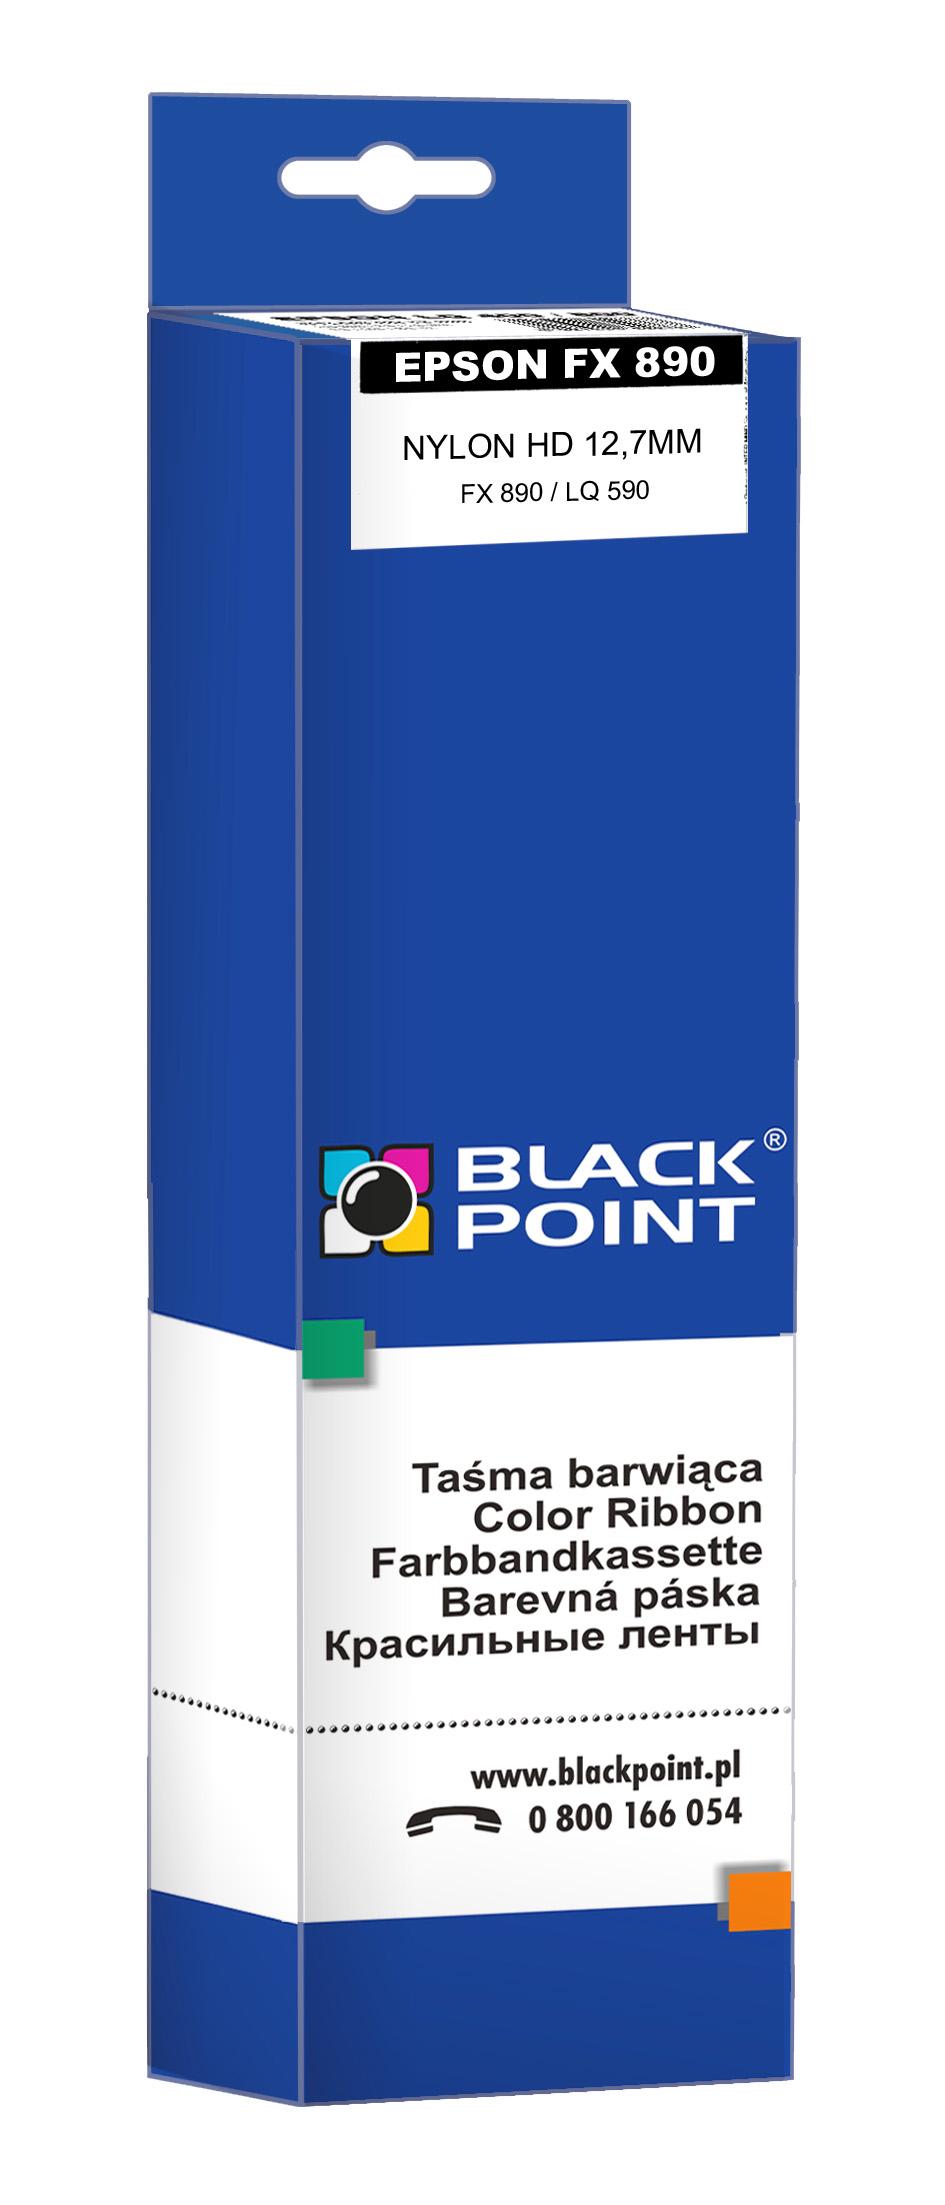 CMYK - Black Point tama barwica KBPE890 zastpuje Epson FX 890 / LQ 590, czarna, 12,7 mm / 17 m, 7,5 mln znakw